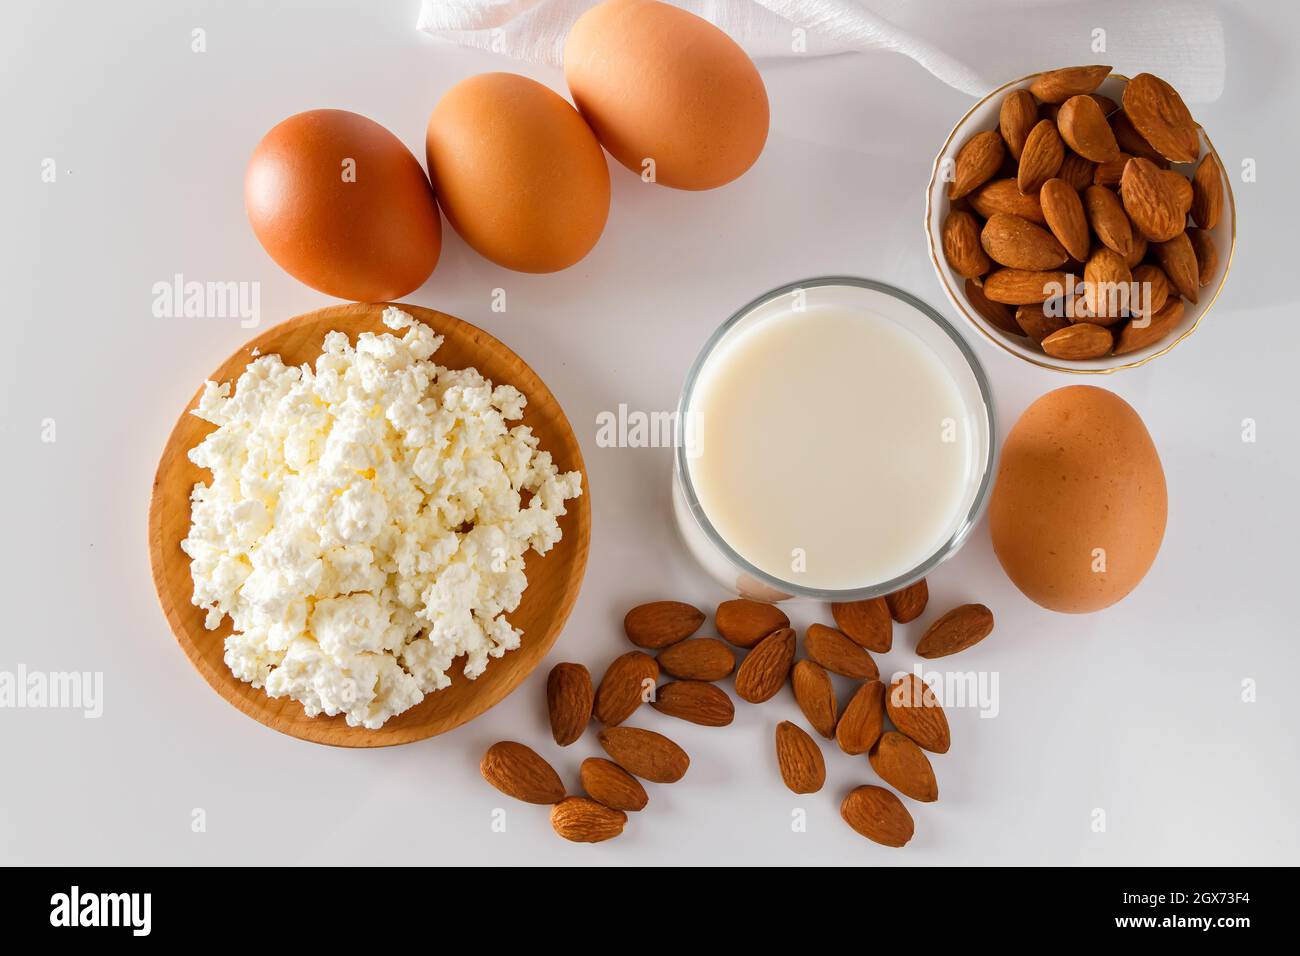 Eine Reihe von gesunden Protein-Lebensmittel für eine ausgewogene Ernährung. Hüttenkäse, Eier und Nüsse auf weißem Hintergrund. Stockfoto